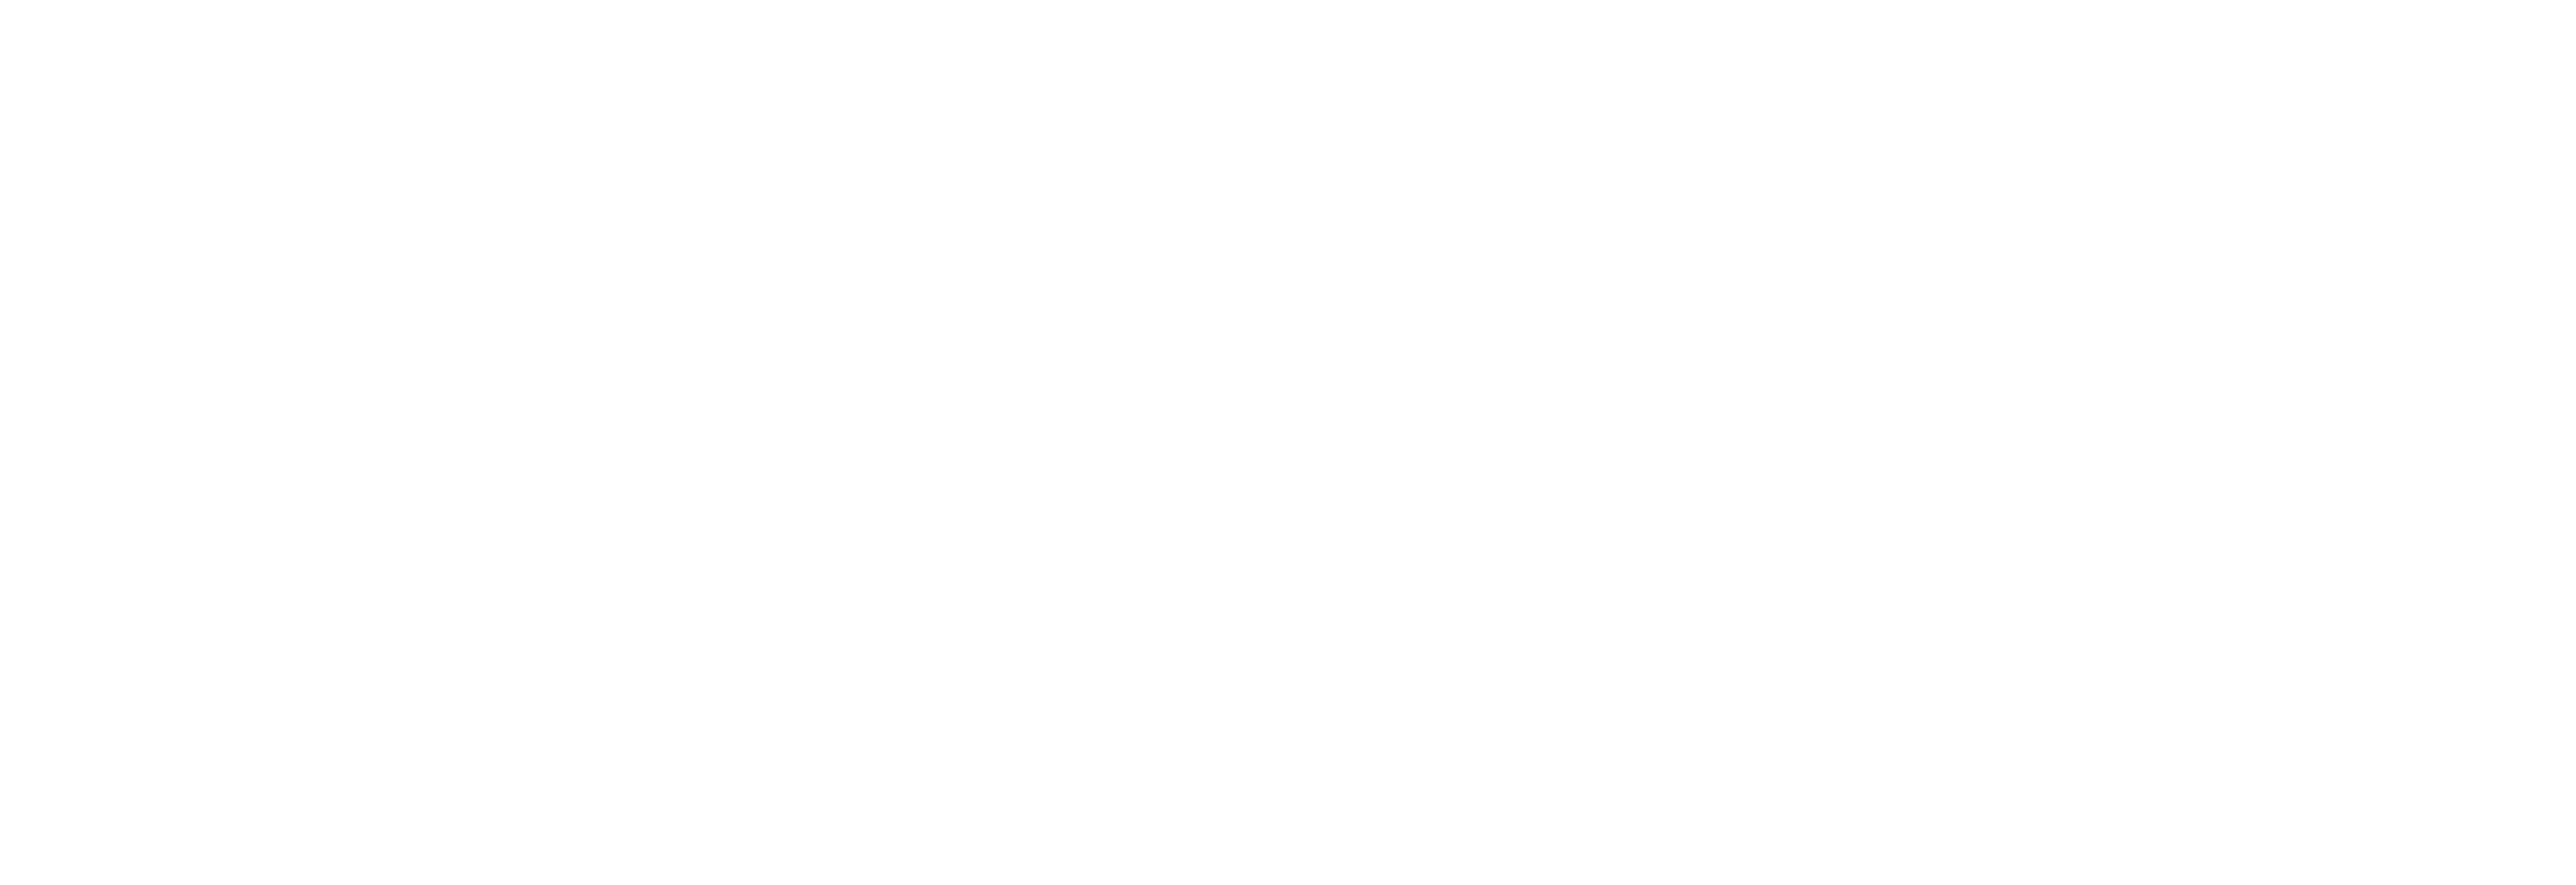 AWesA Business